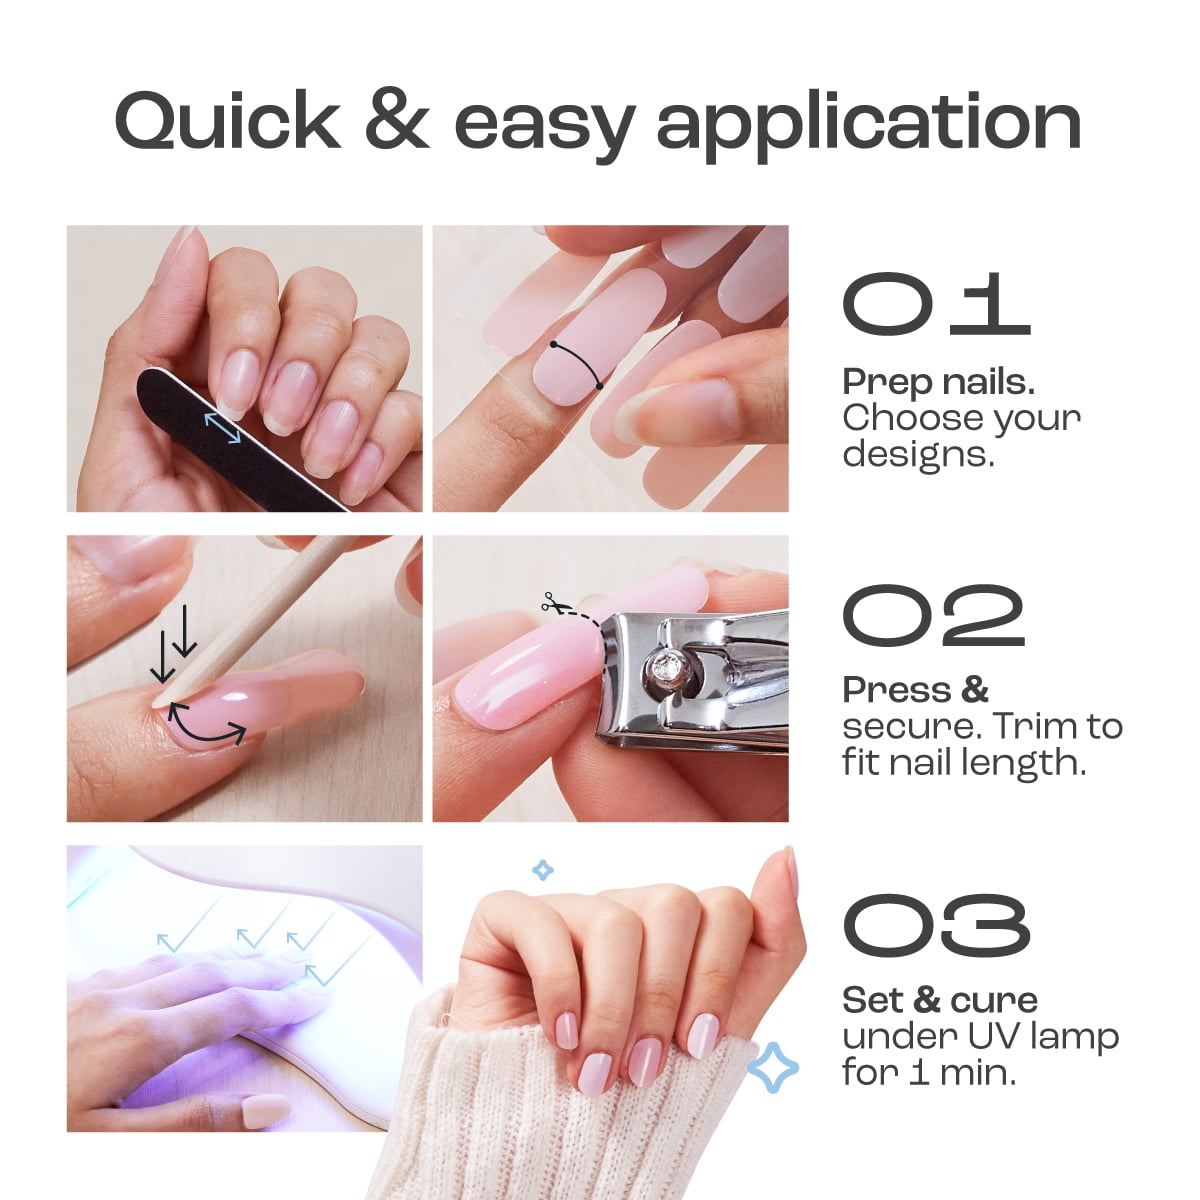 Do Dip nails add length?